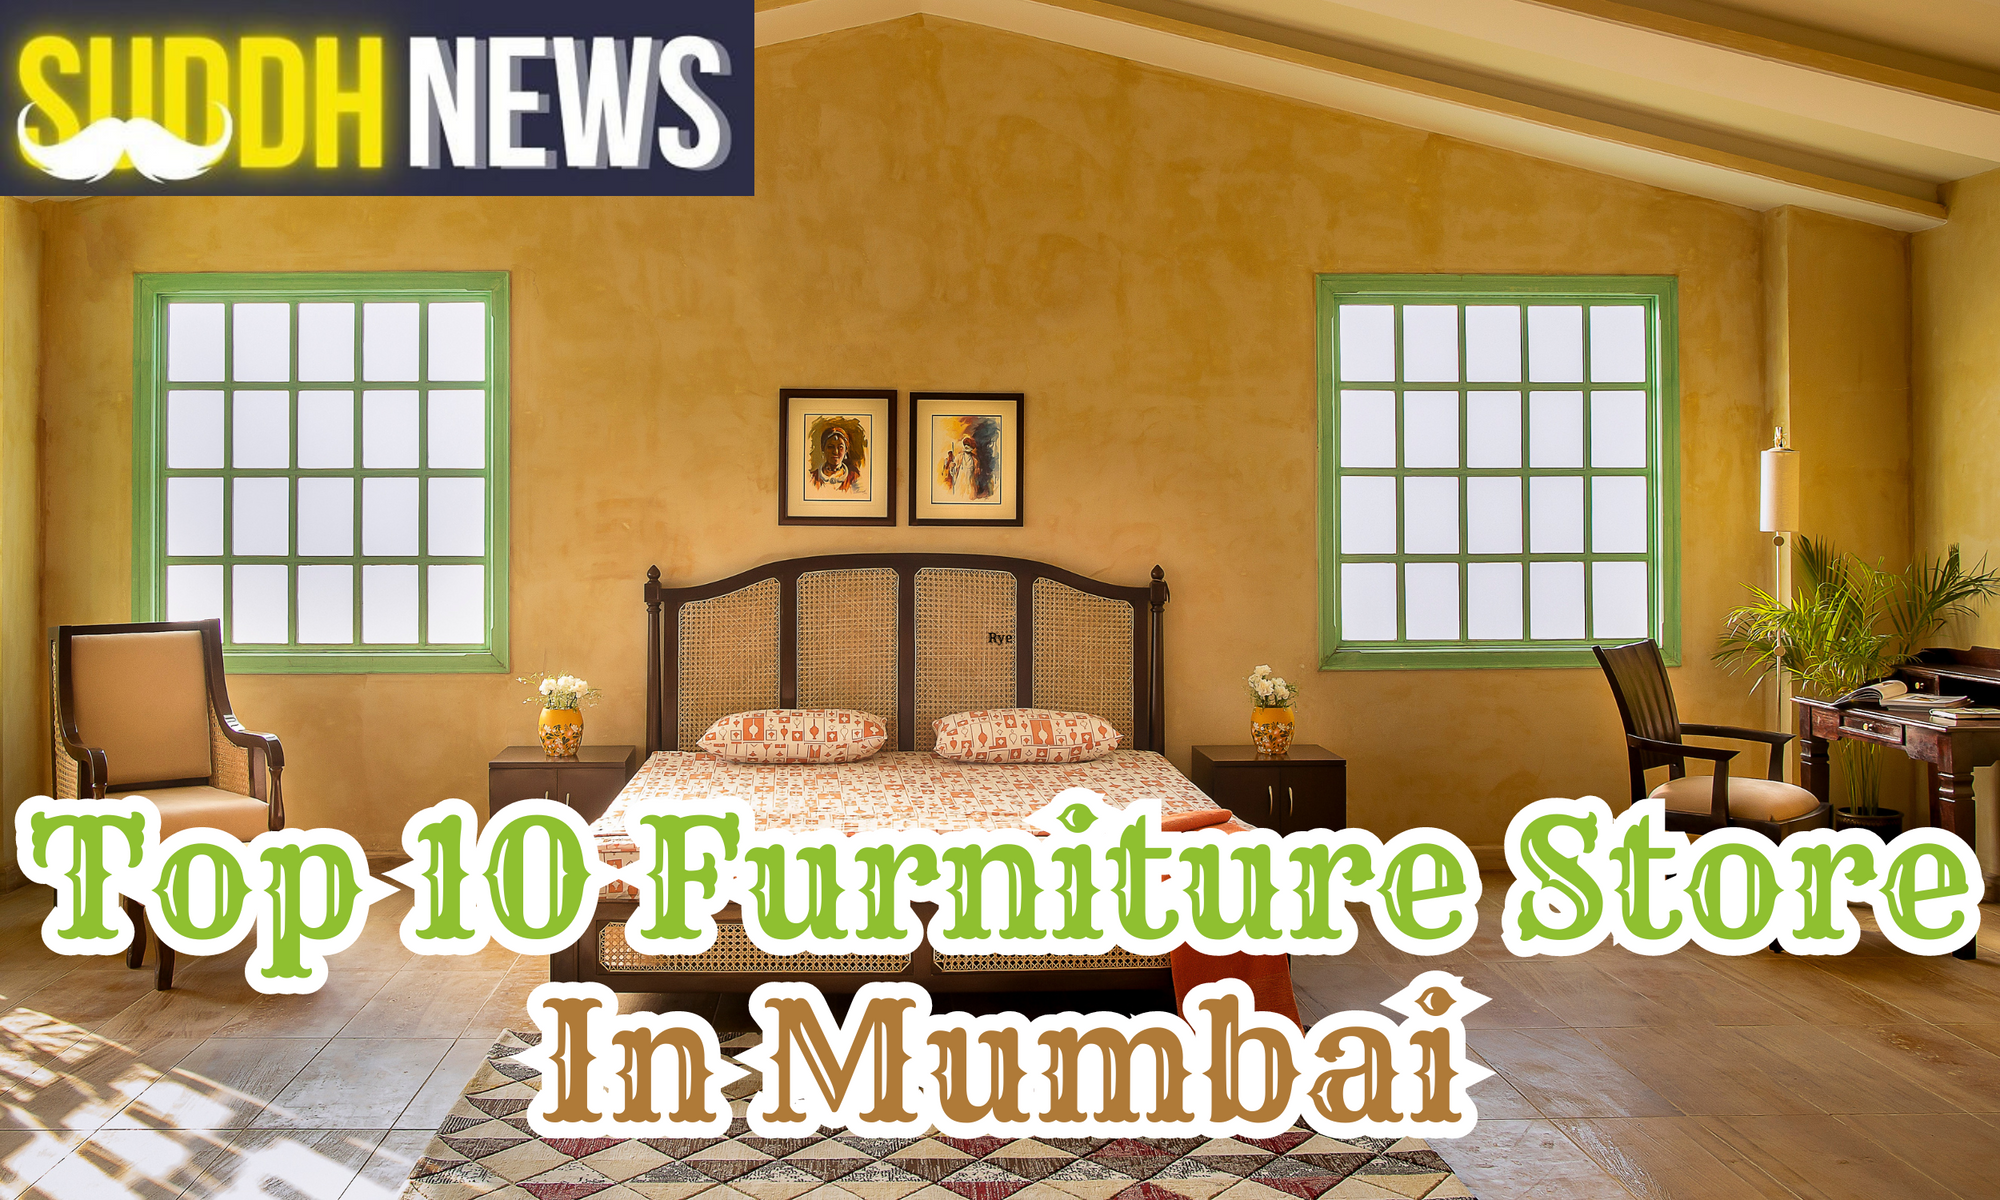 Top 10 Furniture Store In Mumbai